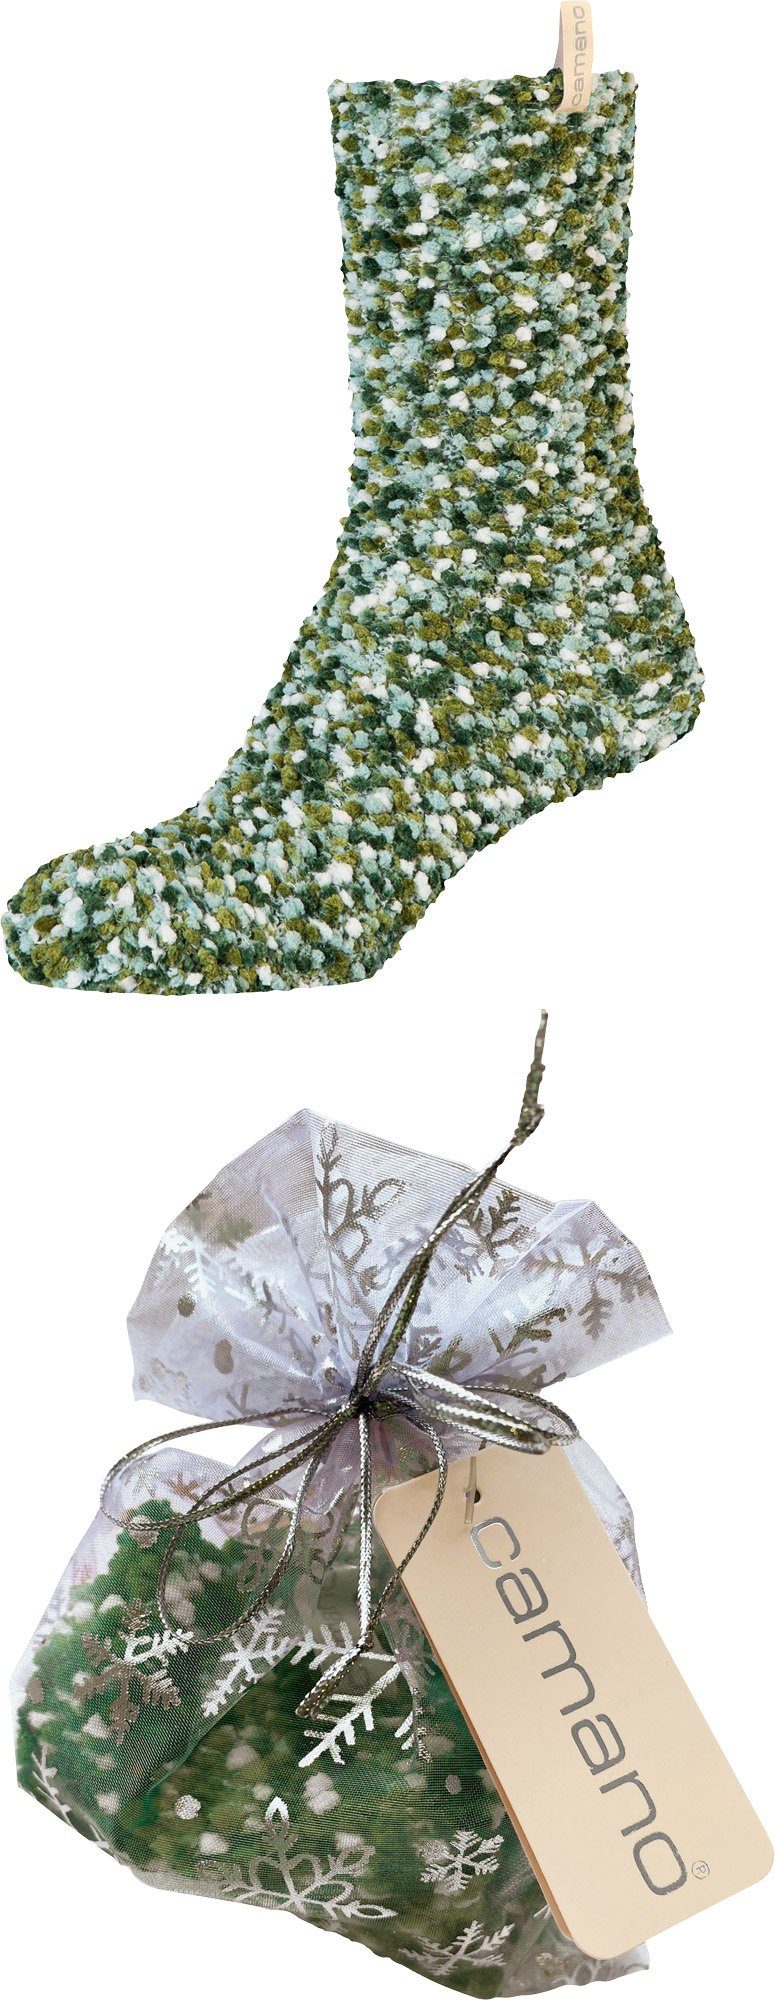 Camano Socken Damen-Socken 1 Paar gemustert olivgrün